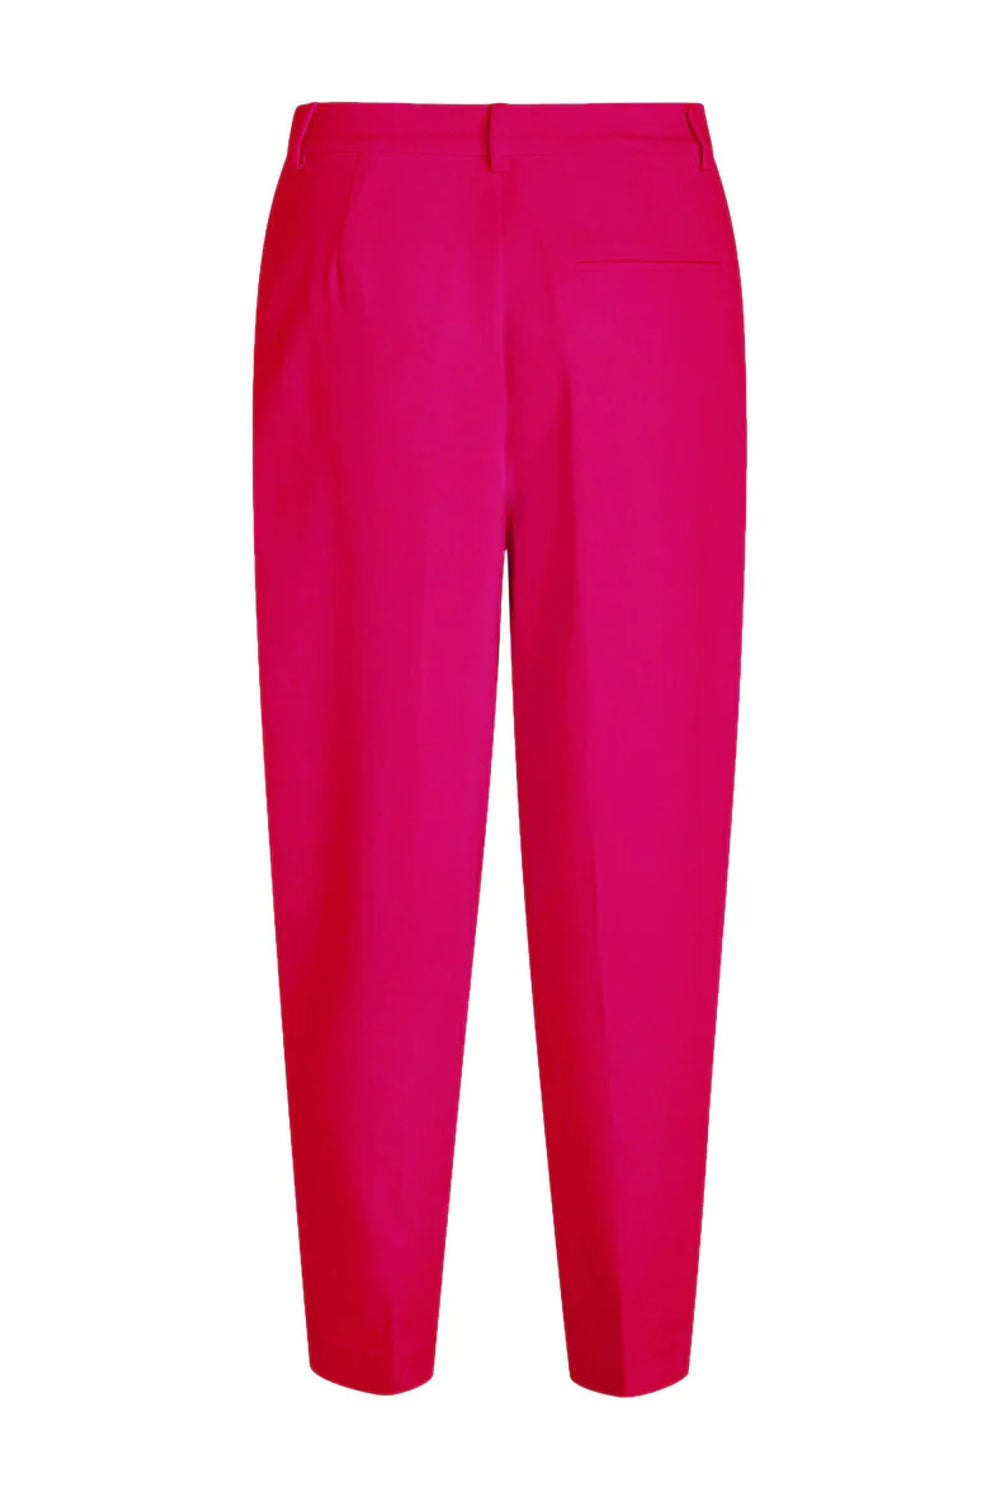 Bruuns Bazaar Women CindySusBBDagny pants Pants Virtual pink